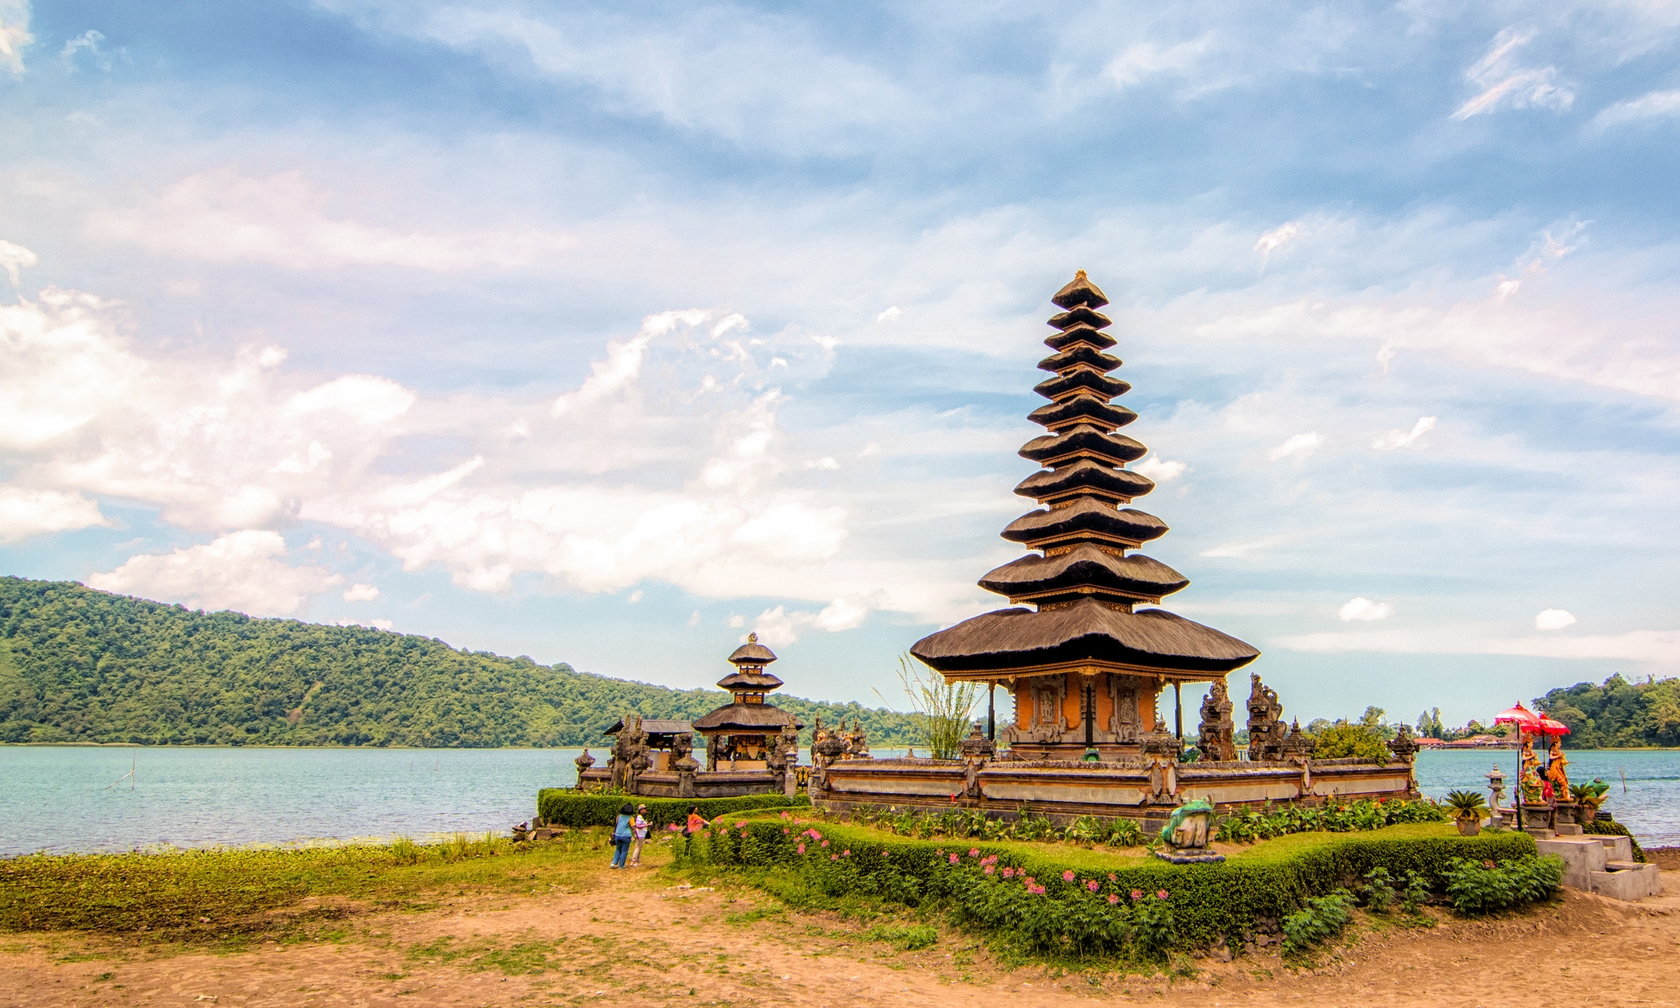 Vacation rentals in Bali